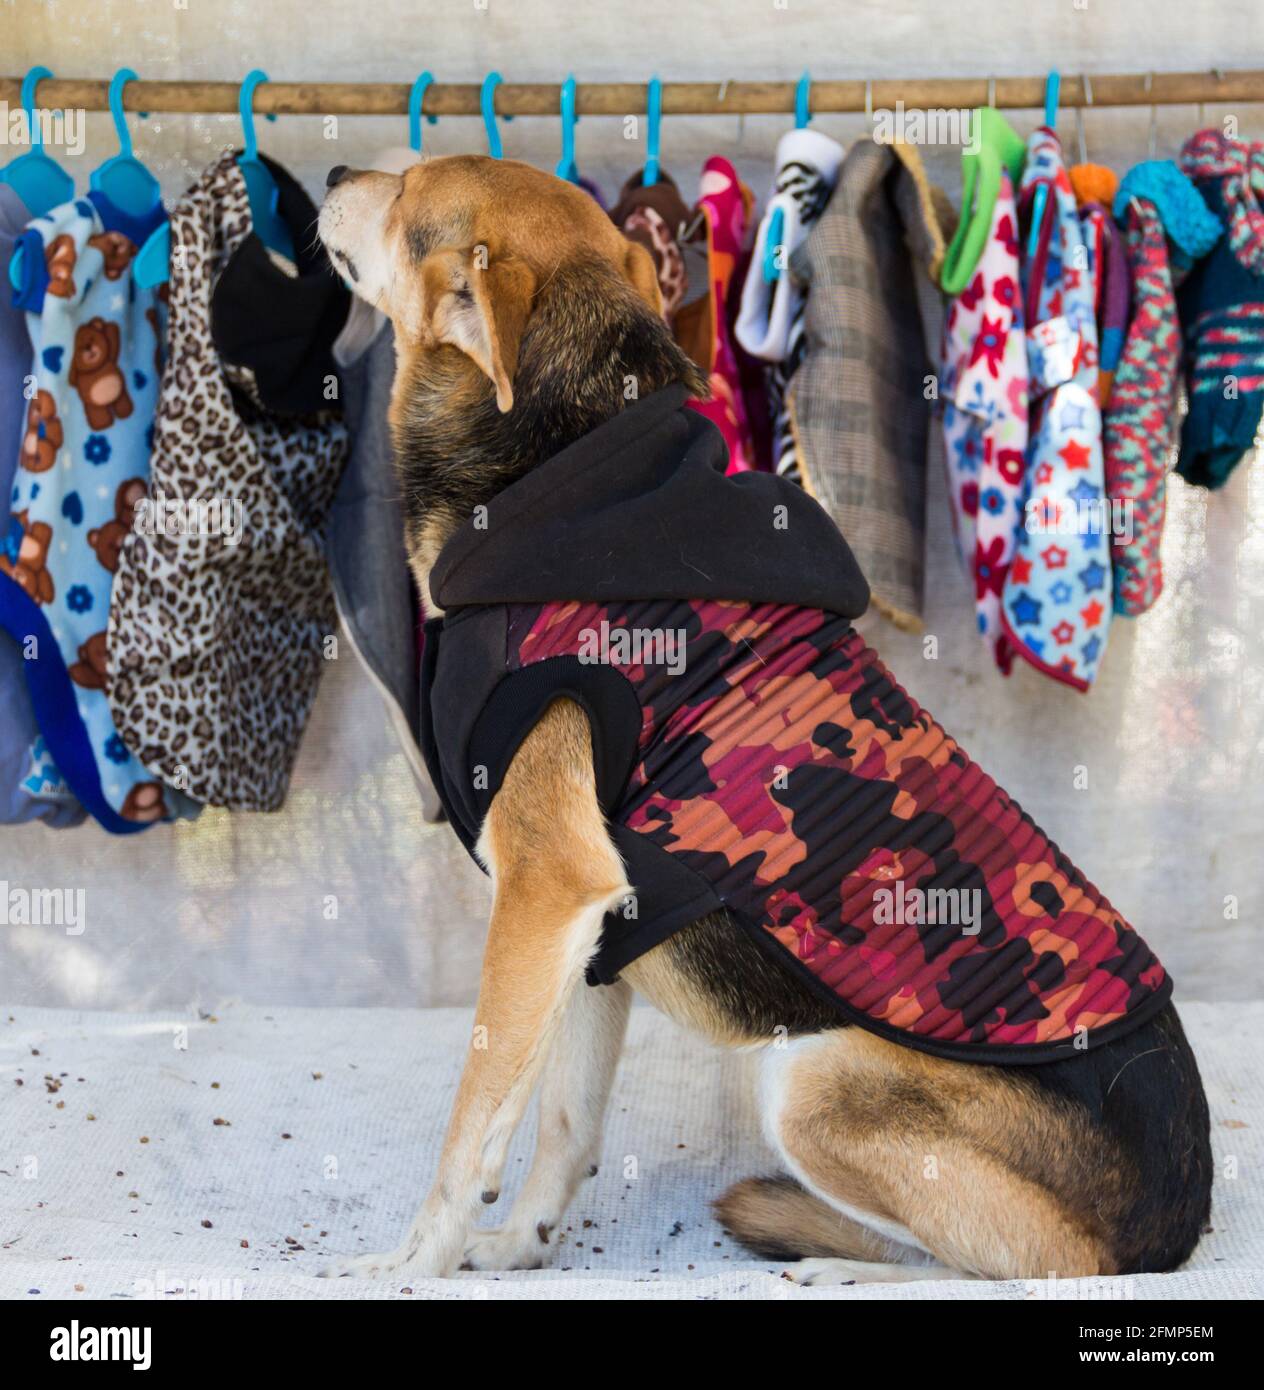 tratando de ropa en la tienda de ropa para mascotas de Alamy